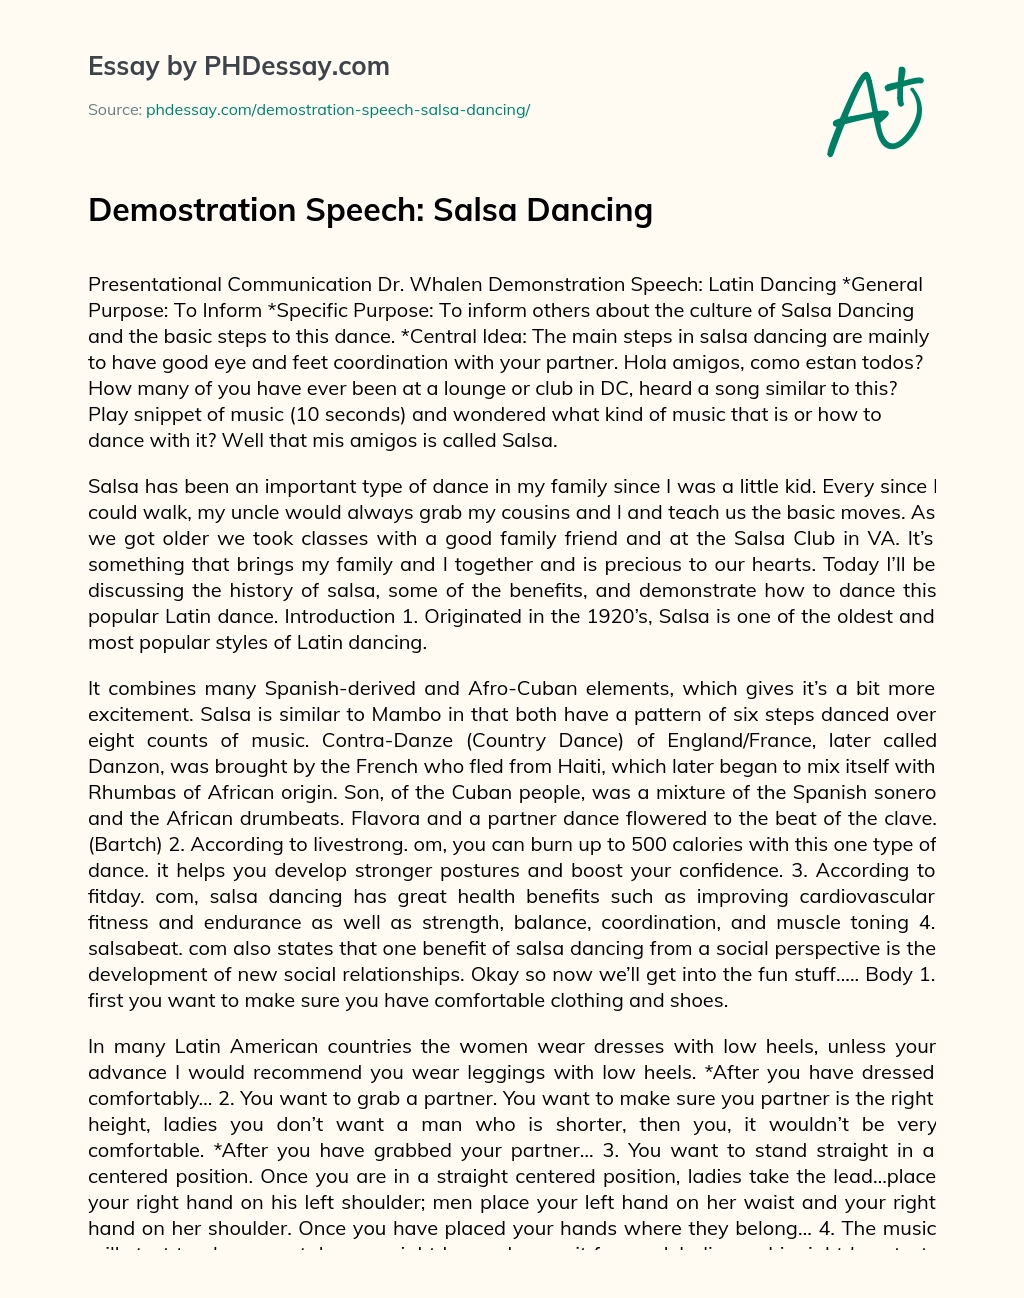 Demostration Speech: Salsa Dancing essay